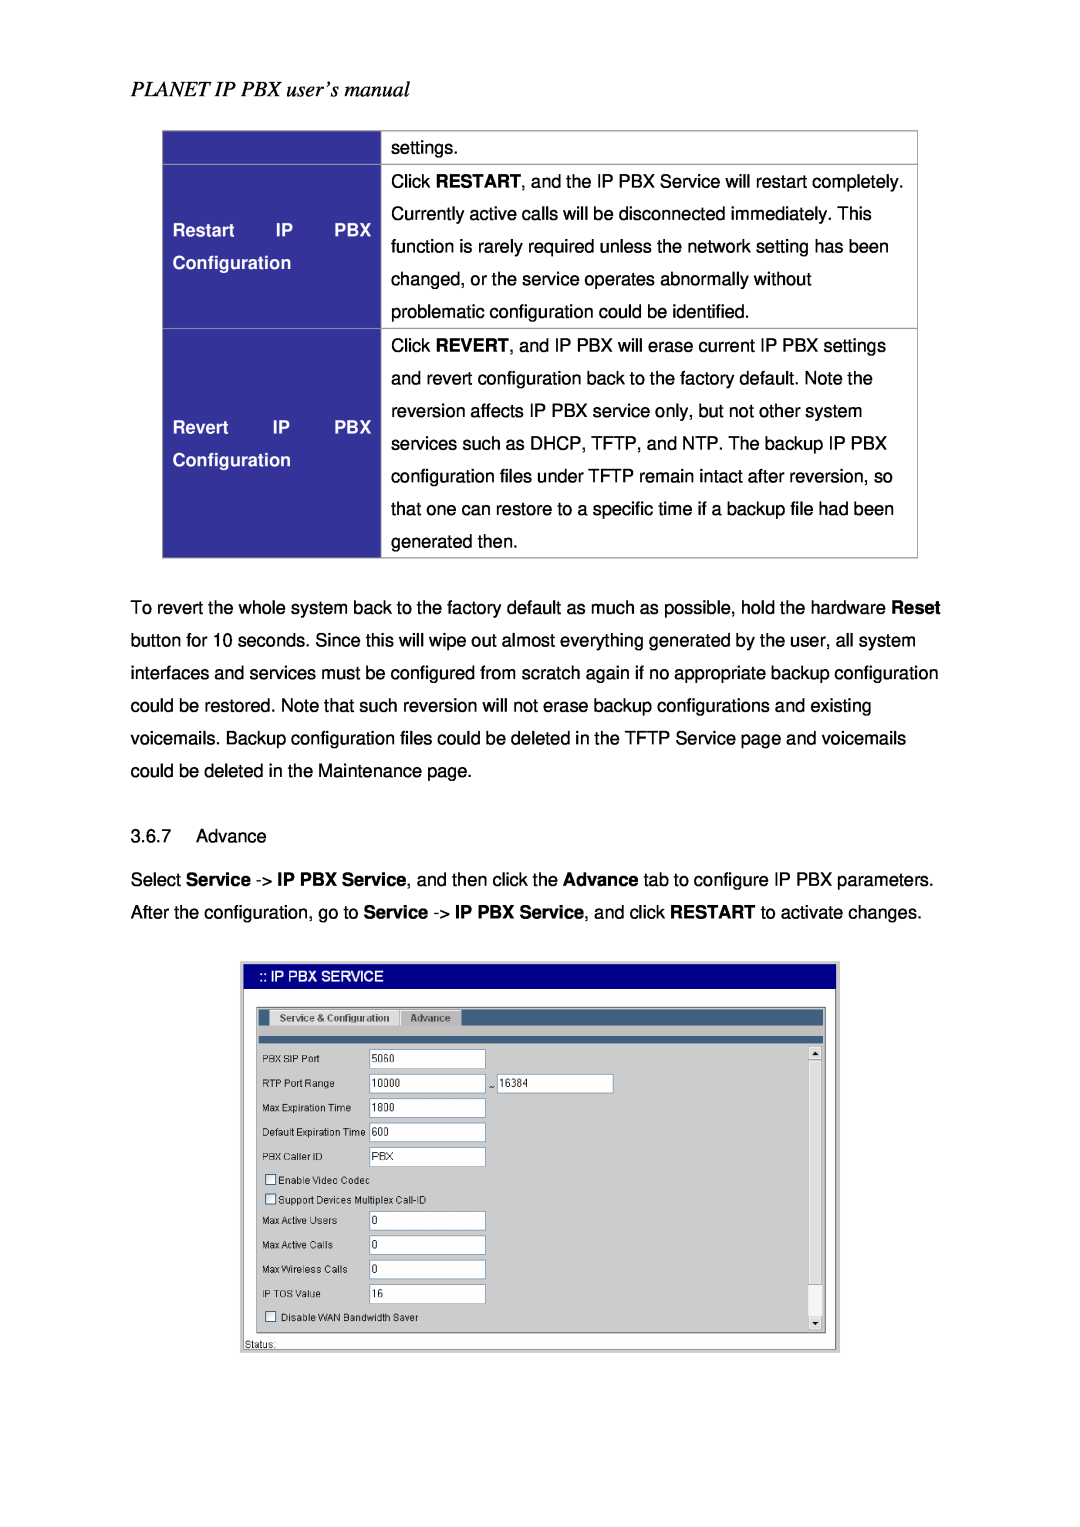 Planet Technology IPX-1800N user manual Restart, Revert, PLANET IP PBX user’s manual, Configuration 